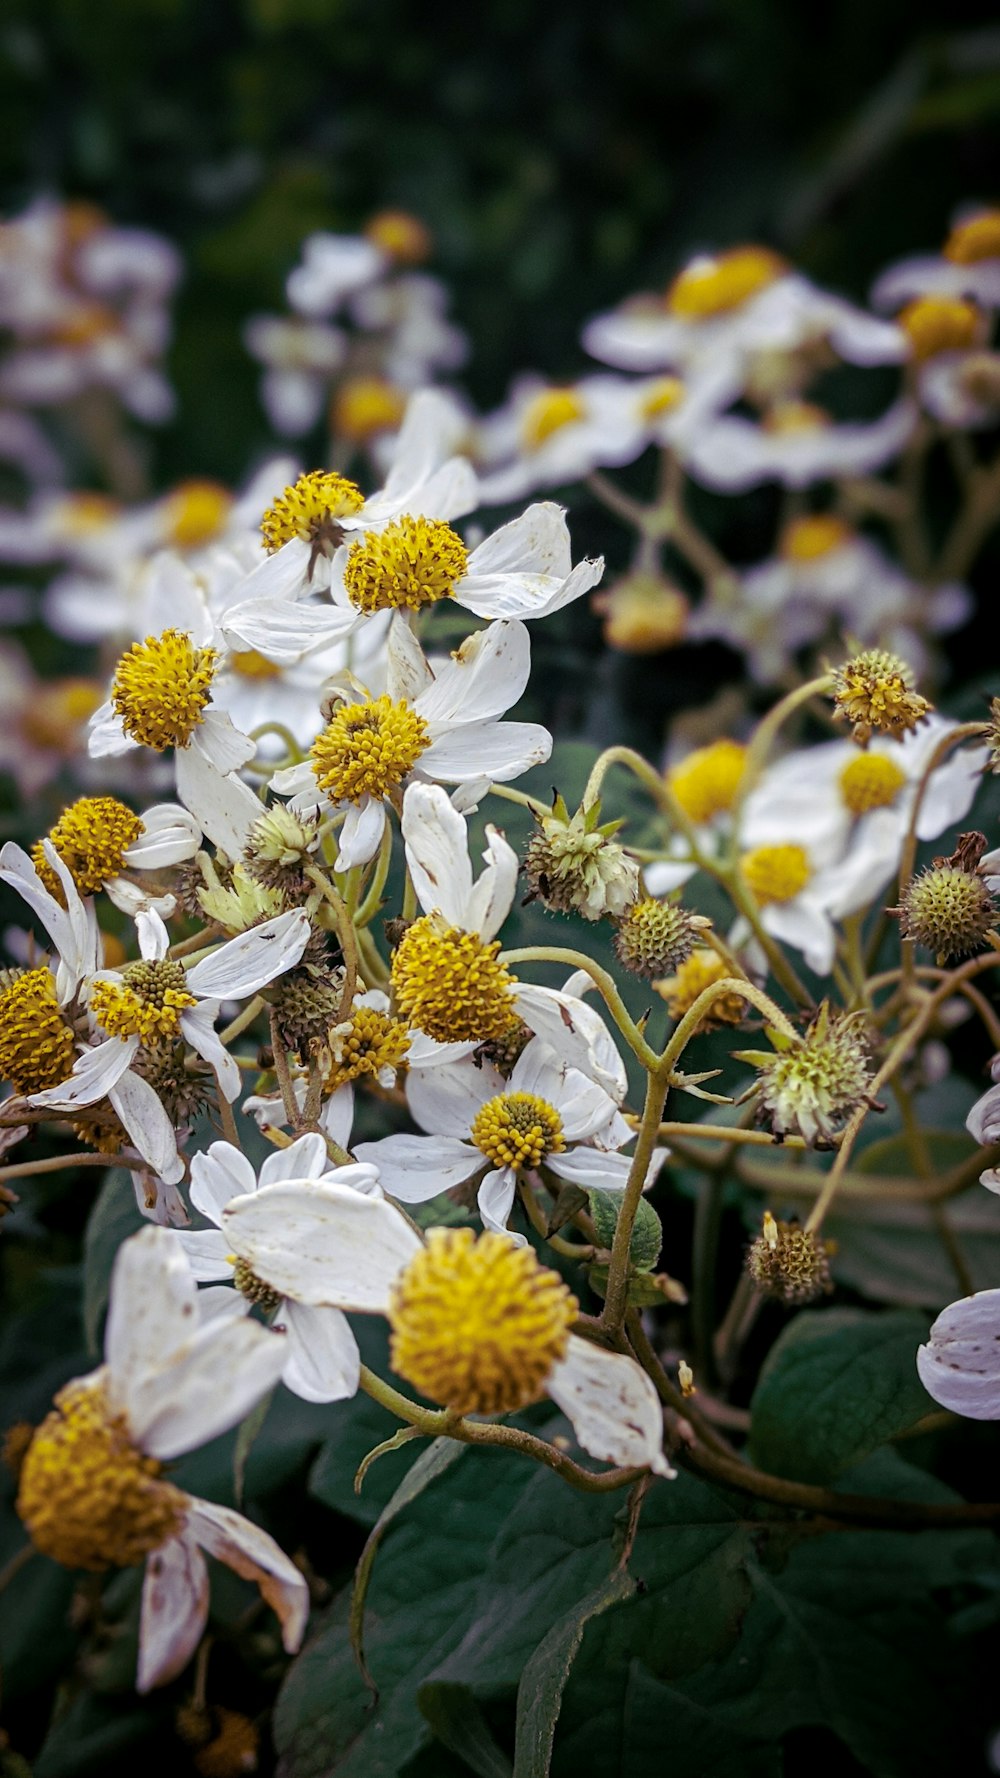 flores brancas na lente de deslocamento de inclinação